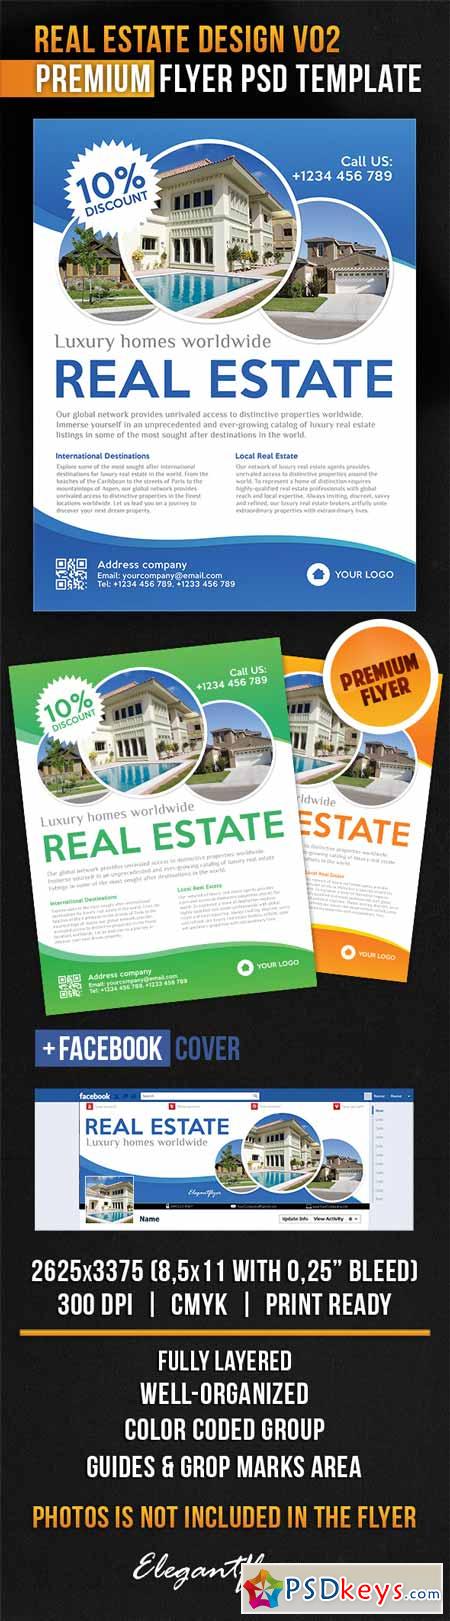 Real Estate Design V02  Flyer PSD Template + Facebook Cover